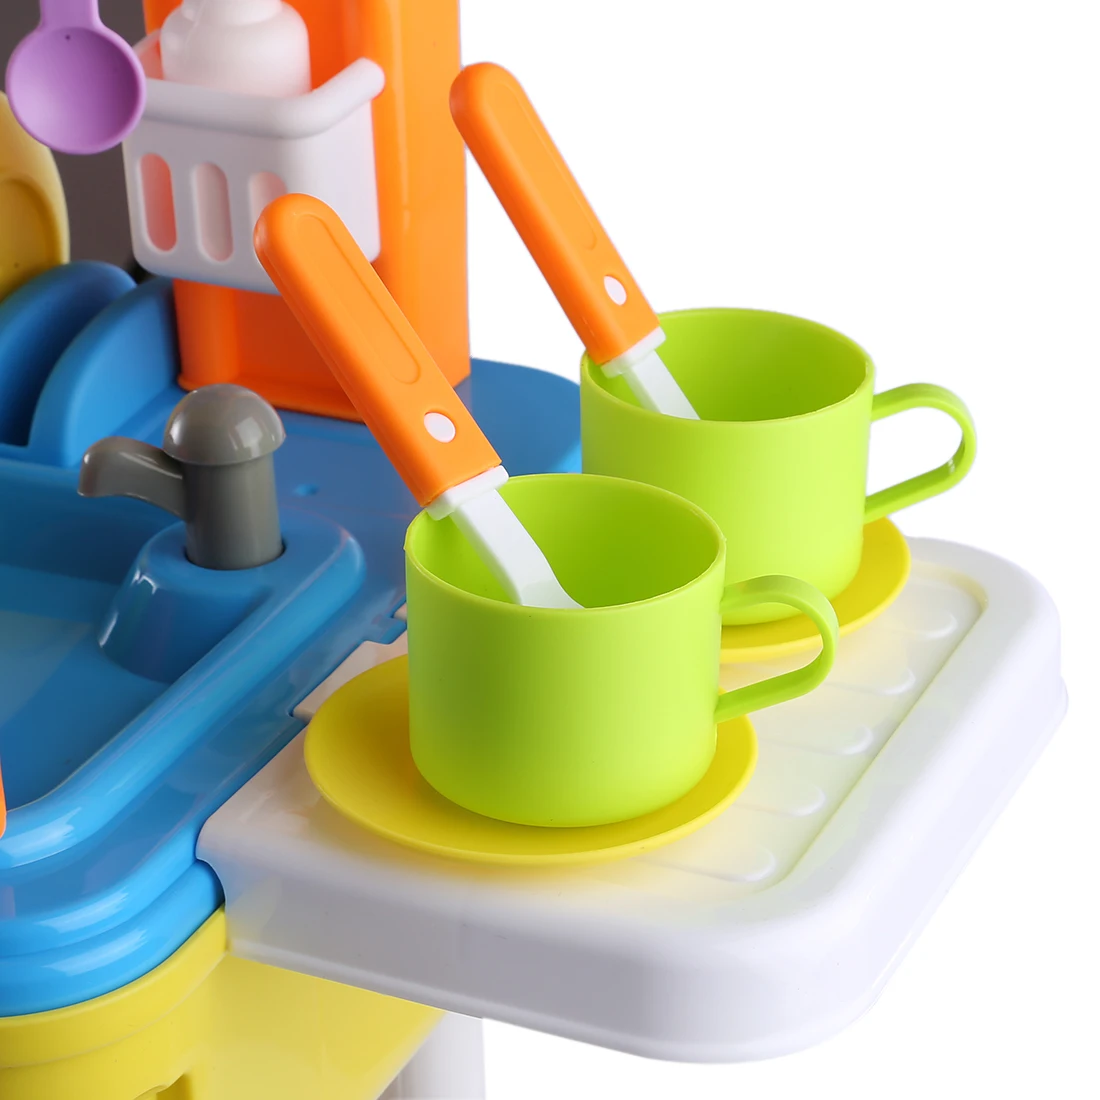 Детская кухня Пособия по кулинарии Наборы инструментов претендует Workbench Playset развивающие игрушки с Чемодан контейнер